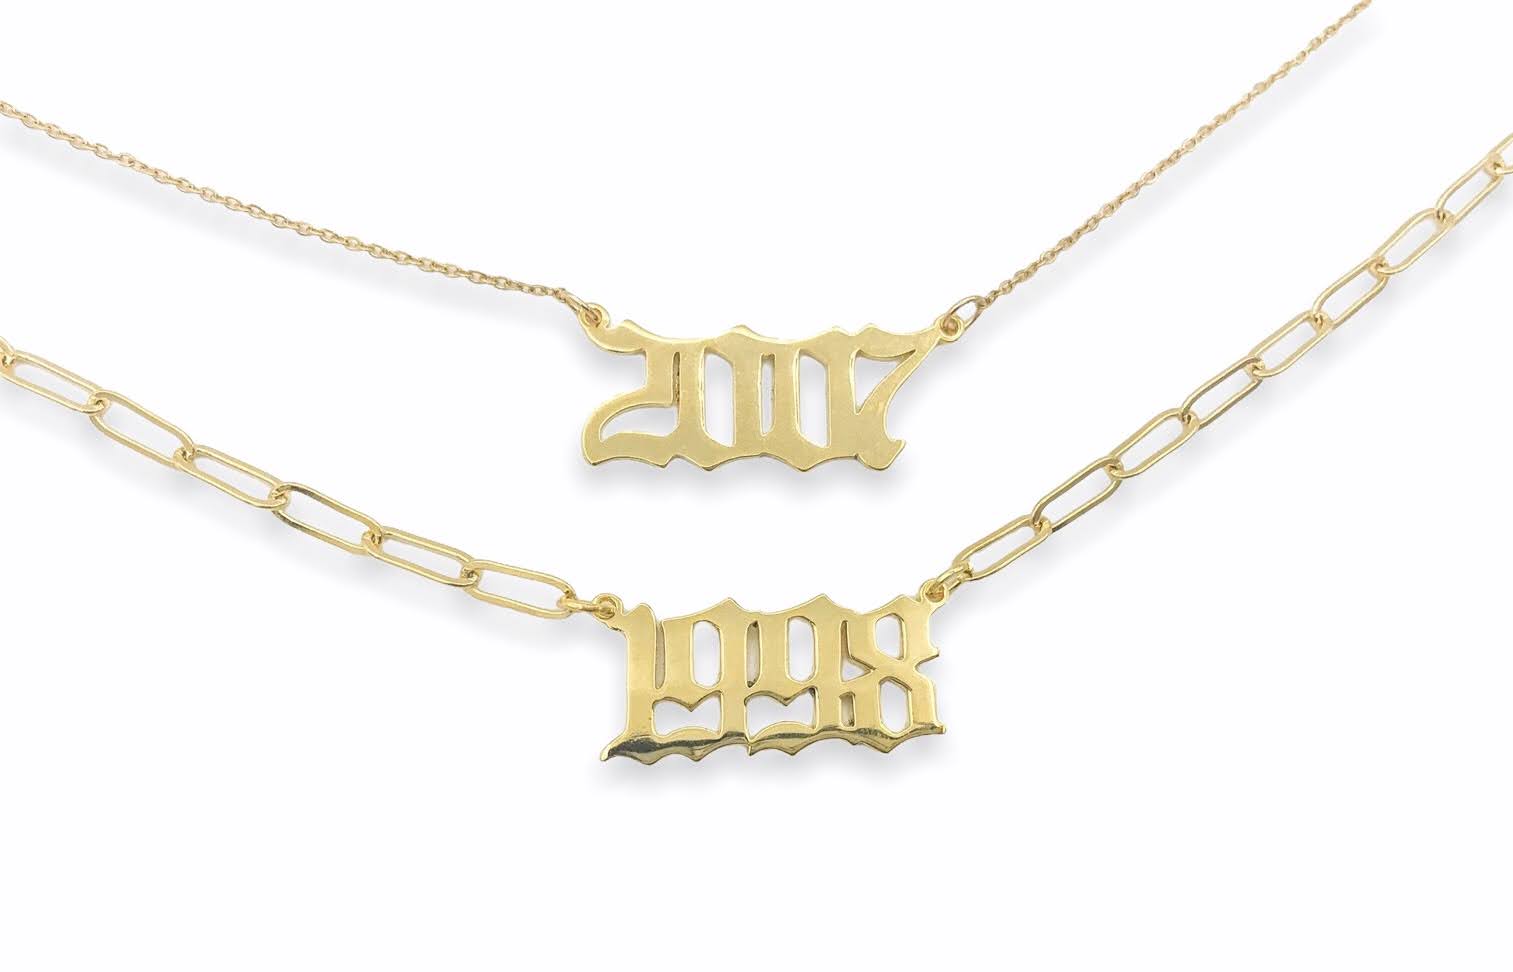 birthyear necklace gold fashion trendy jewelry